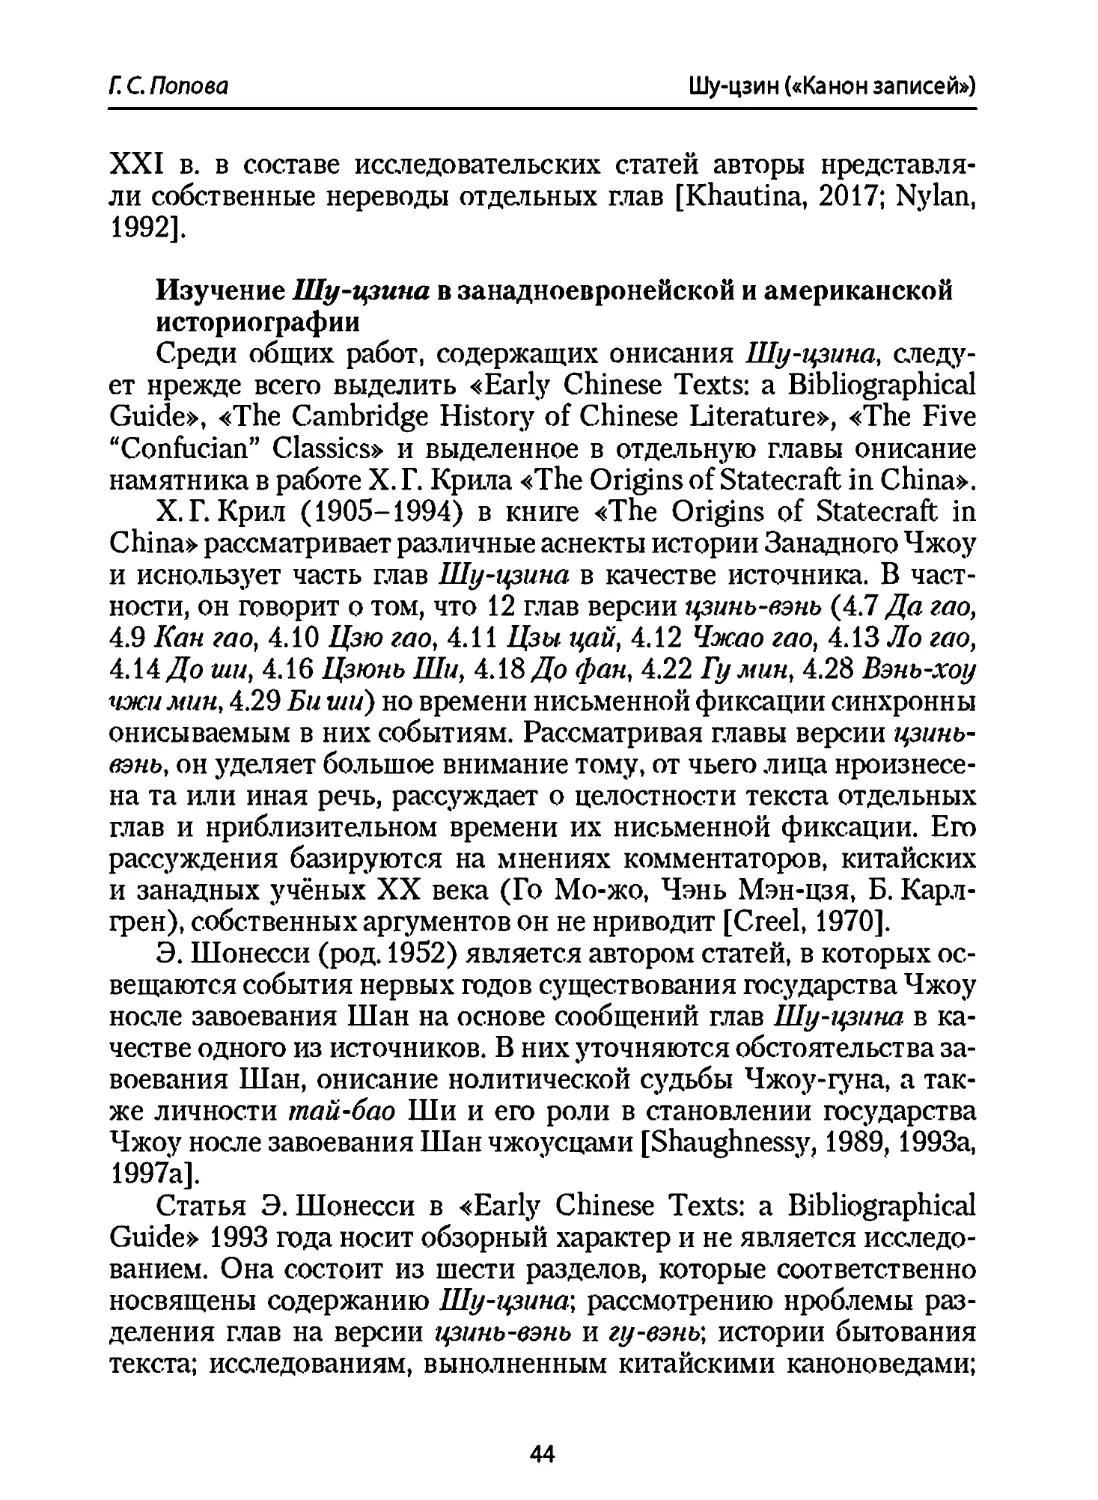 Изучение Шу-цзина в западноевропейской и американской историографии